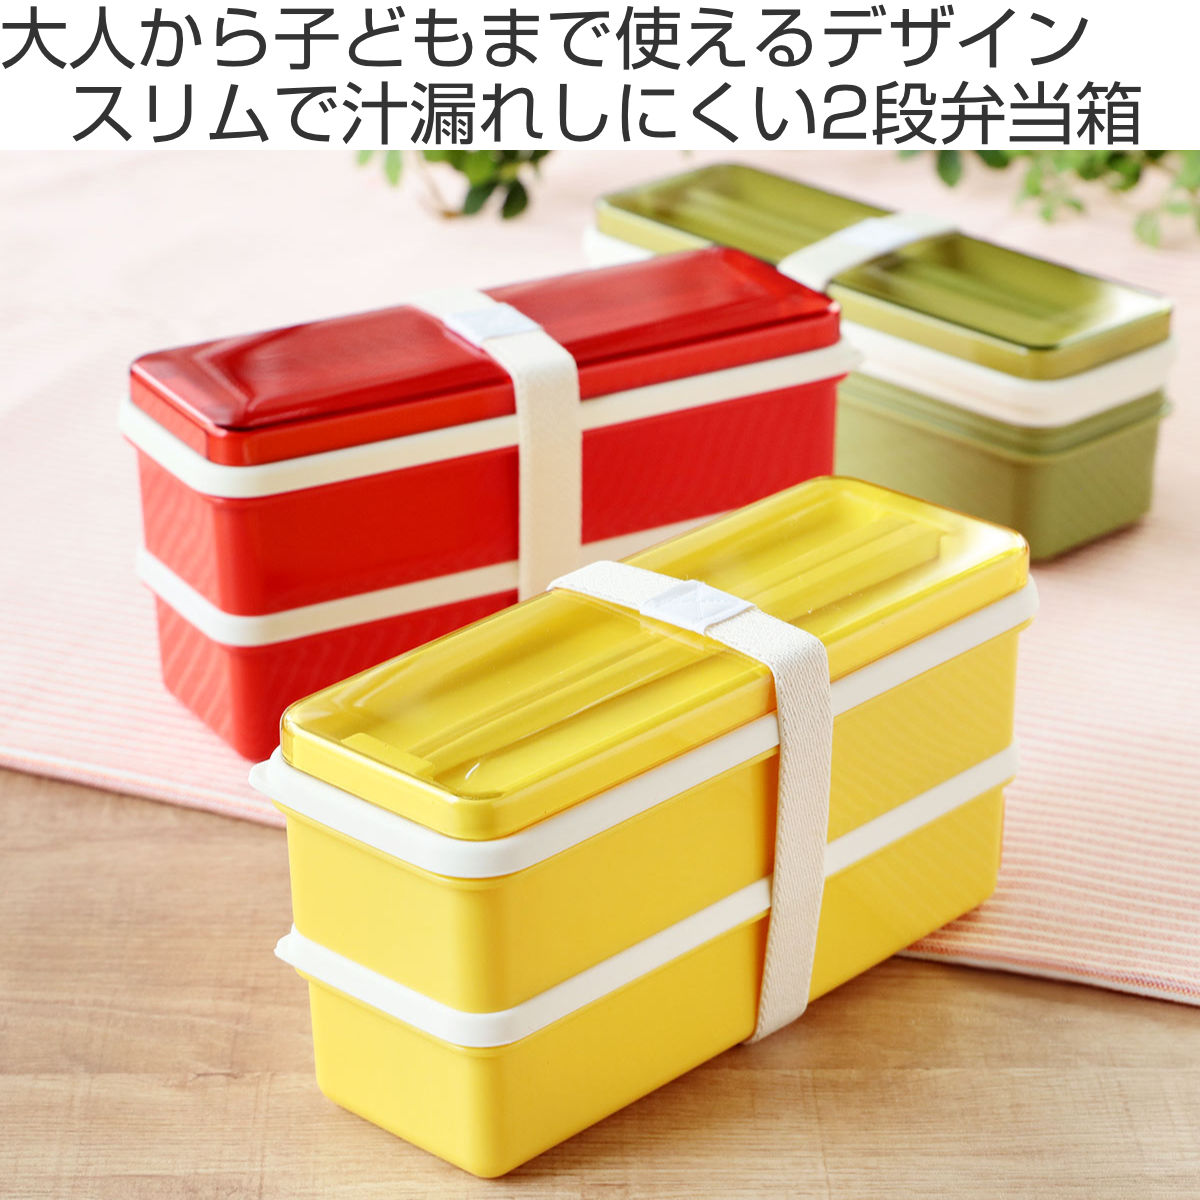 誠実】 日本製 オシャレ レトロ 2段 お弁当箱 ランチボックス 可愛い